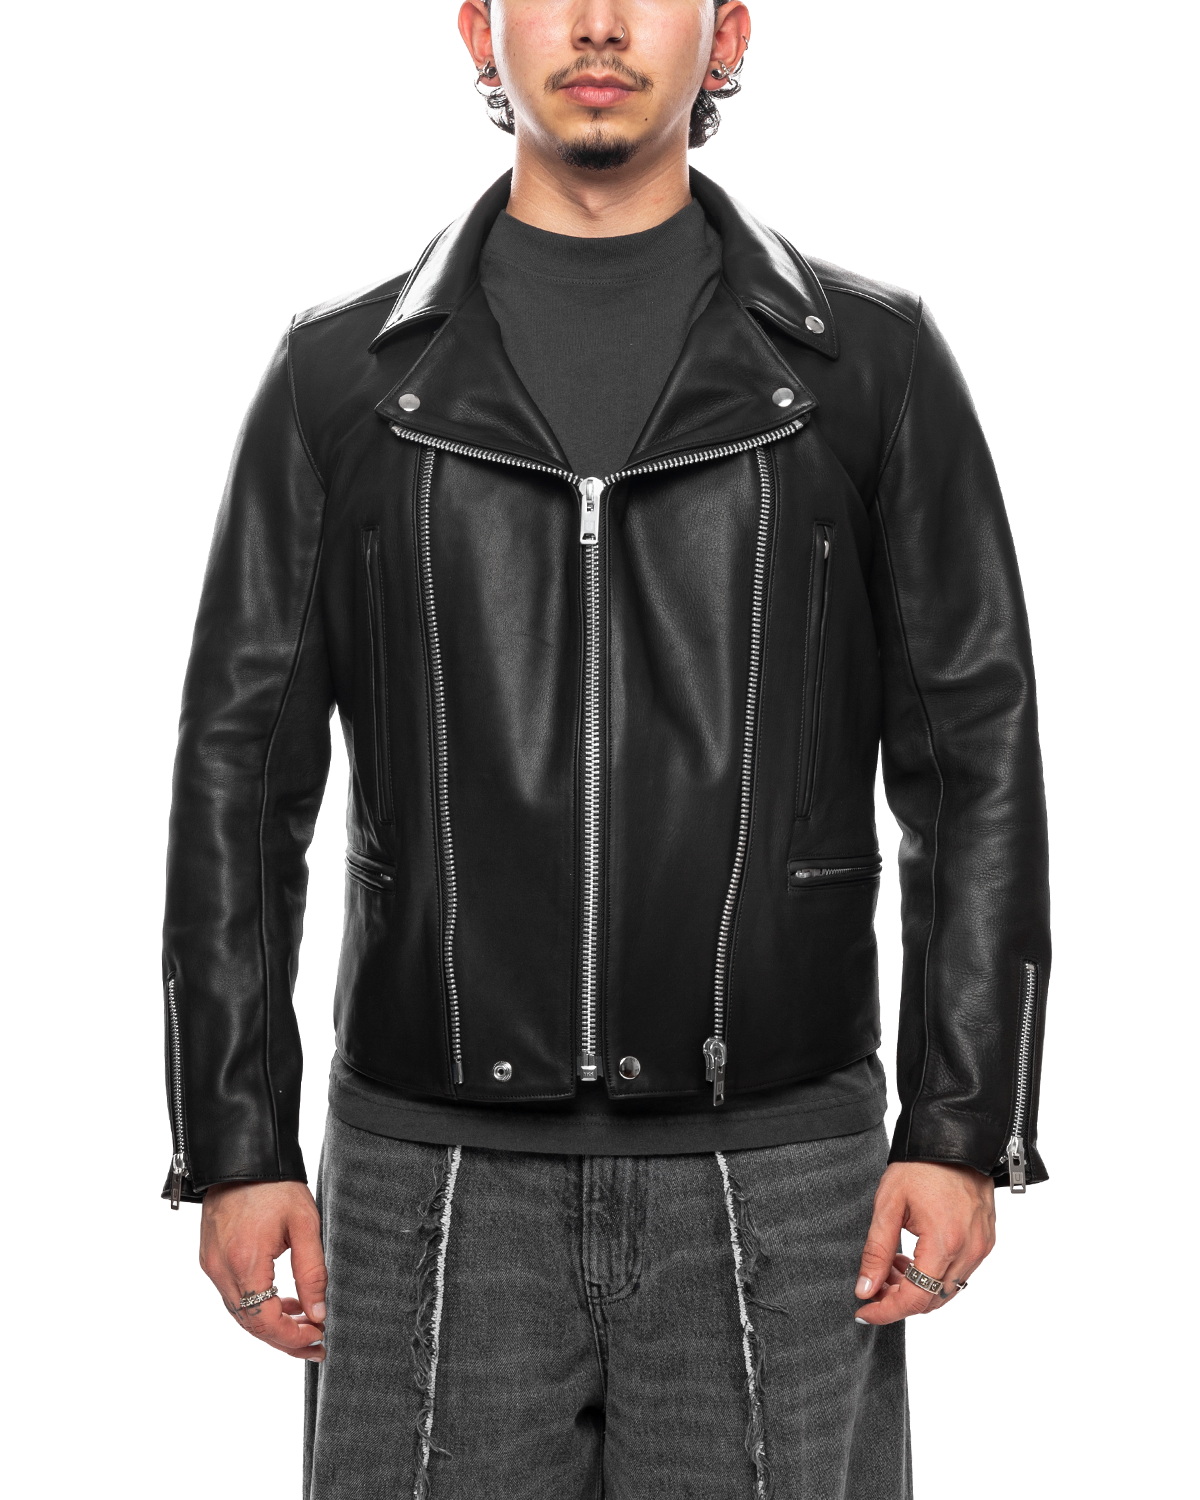 UC2C9204 Jacket LIKELIHOOD Biker Black UNDERCOVER Leather –